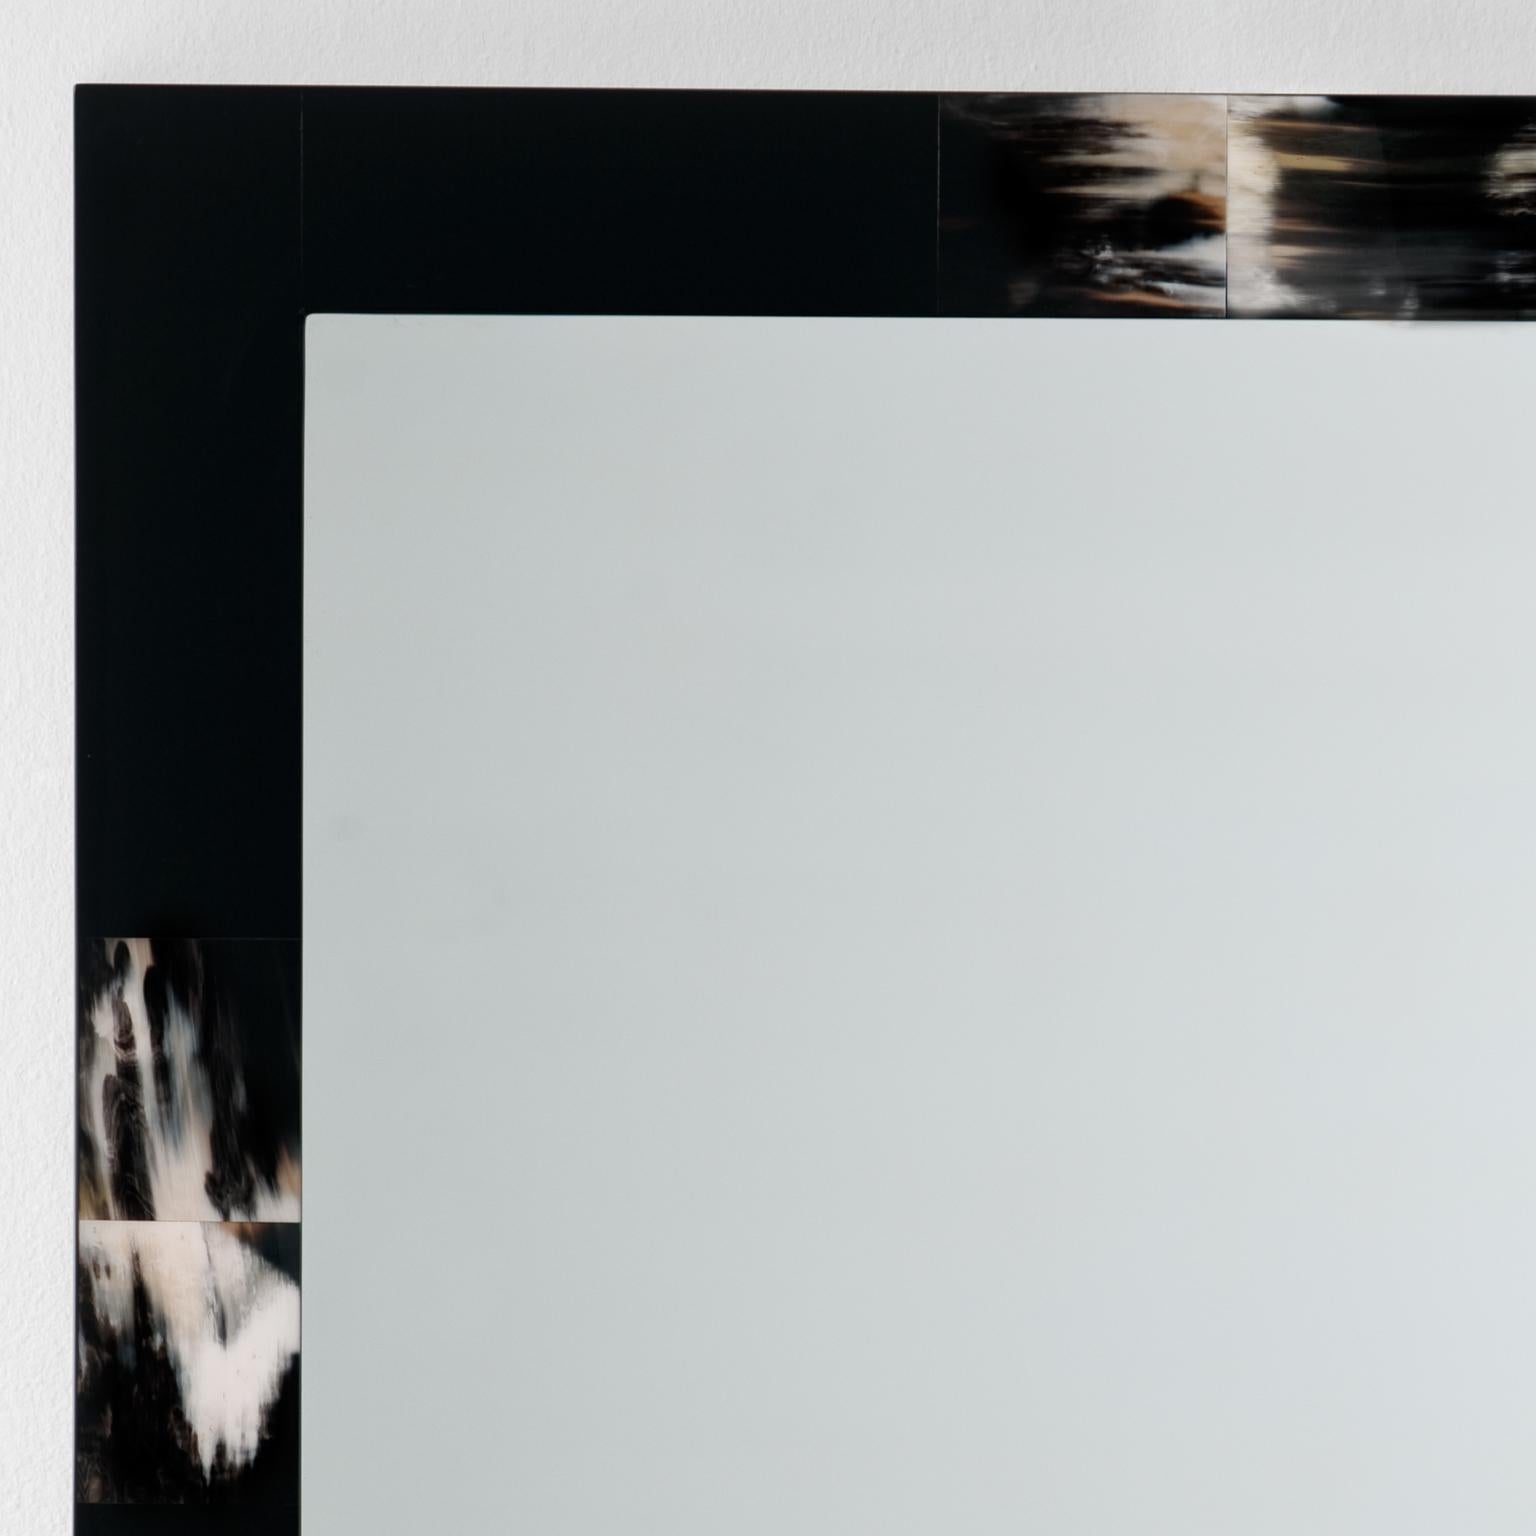 Le miroir mural Erasmo atteint son élégance et son caractère unique en combinant la simplicité du design avec un artisanat et des matériaux luxueux. Les carreaux du Corno Italiano, taillés individuellement à la main, sont posés dans une structure